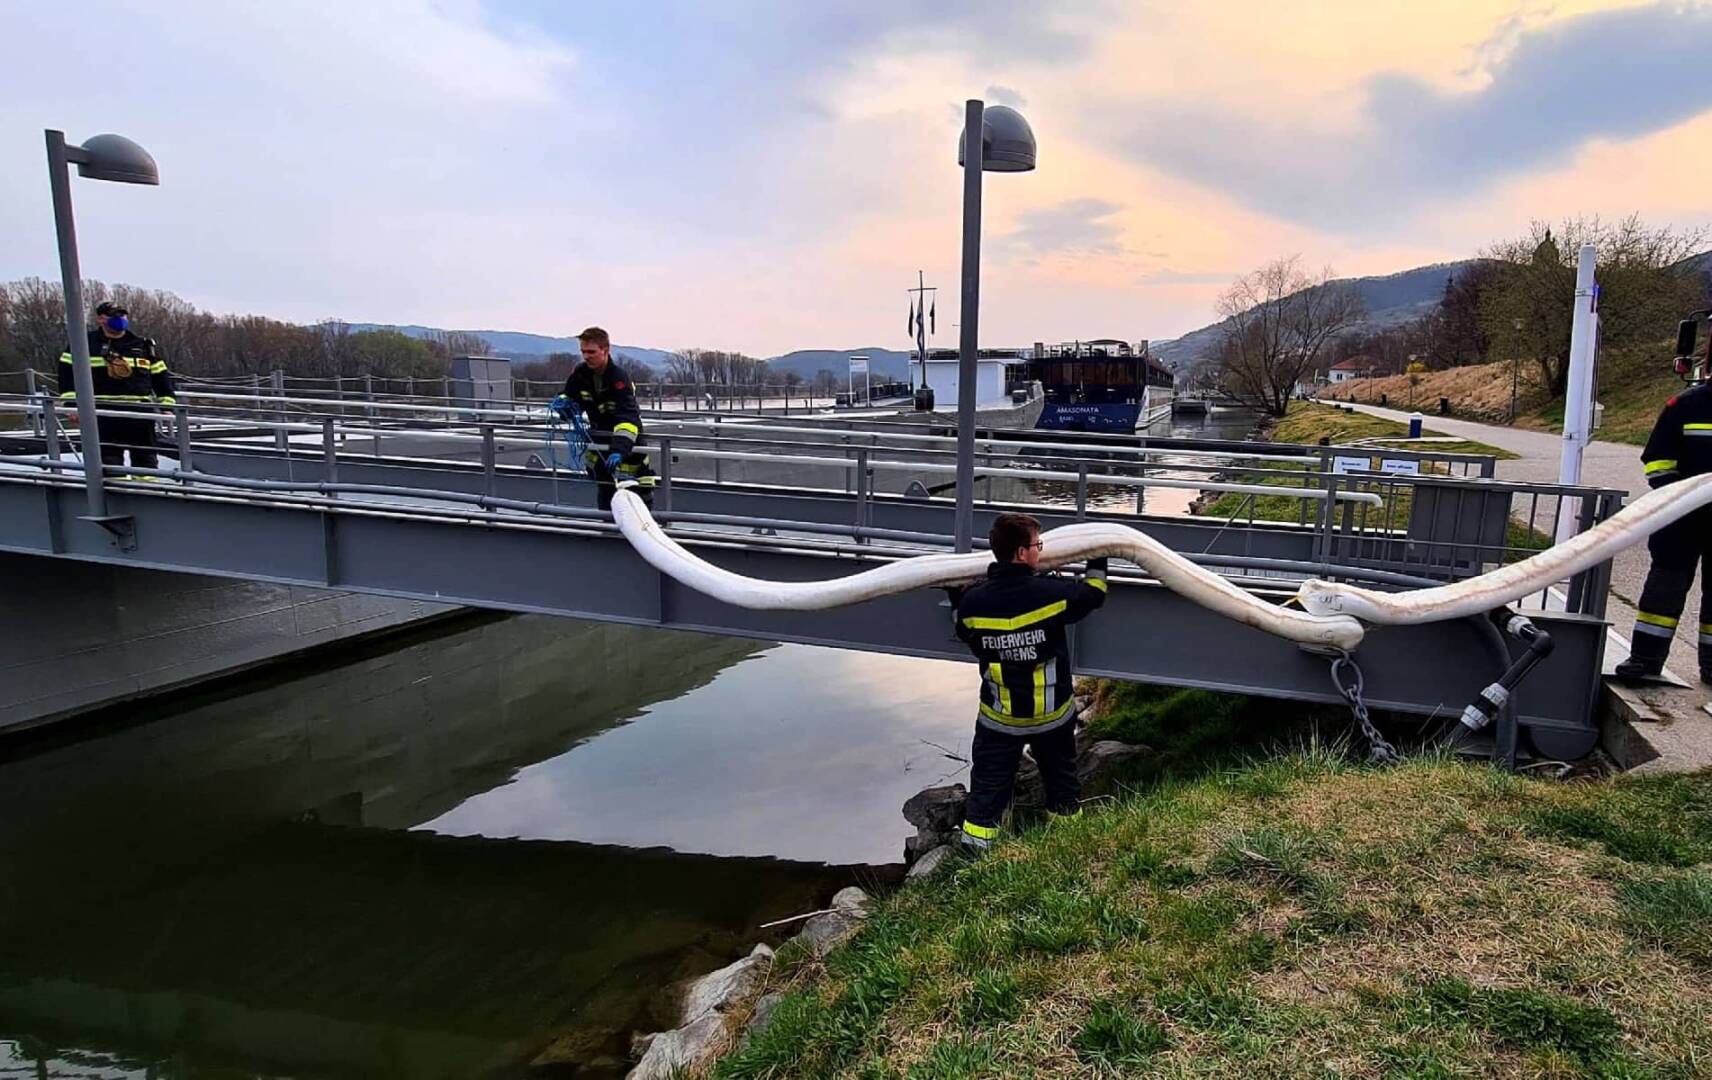 Größerer Ölfilm auf der Donau bei Krems - Stein